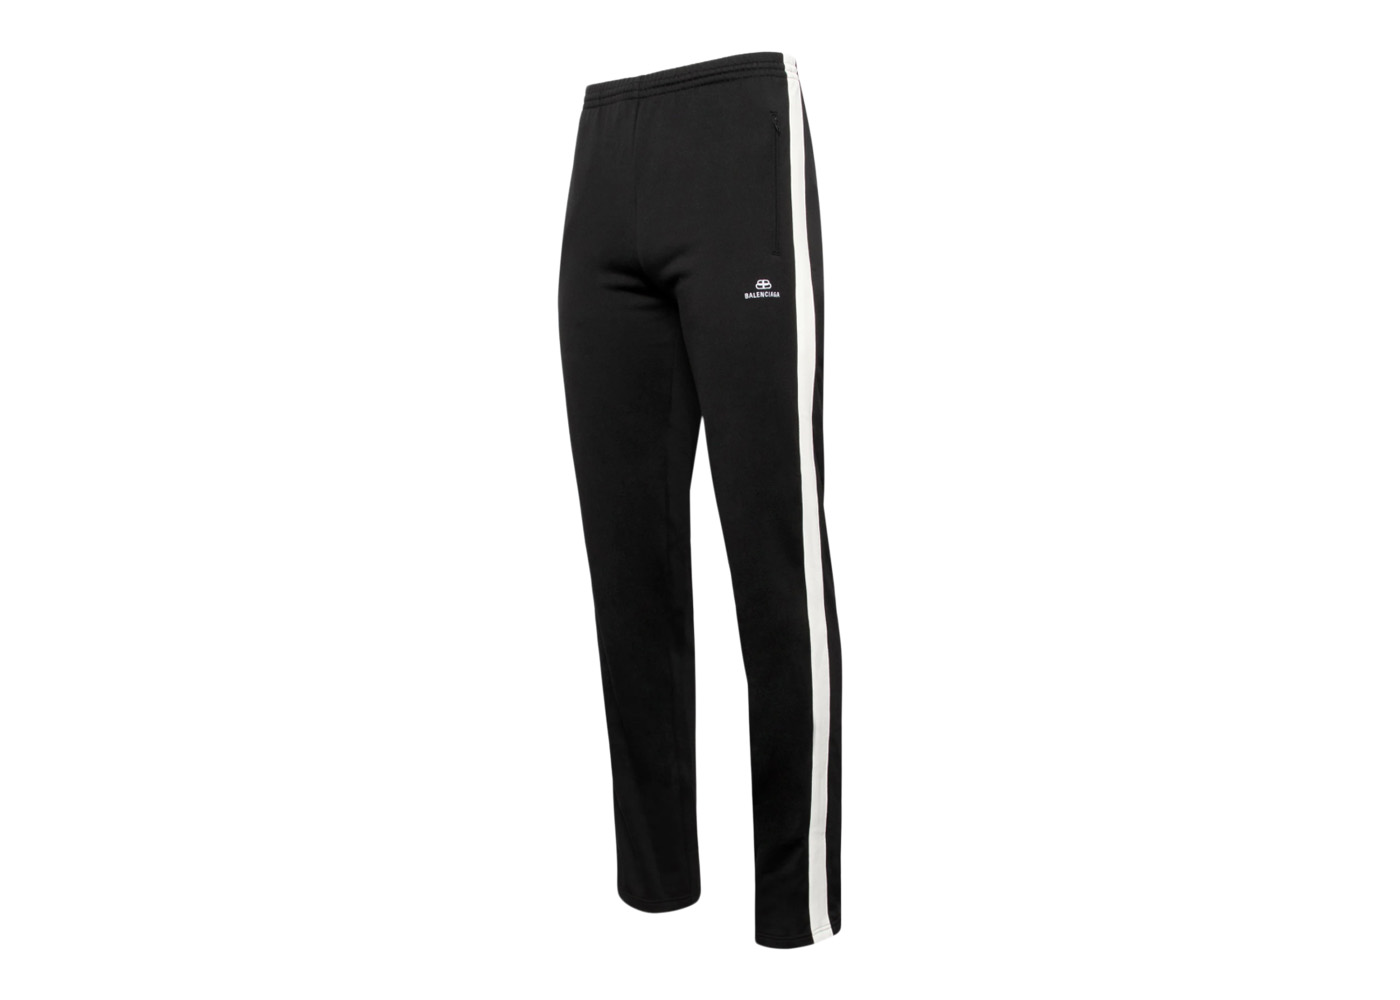 Balenciaga Side Stripe Track Pants Black/White